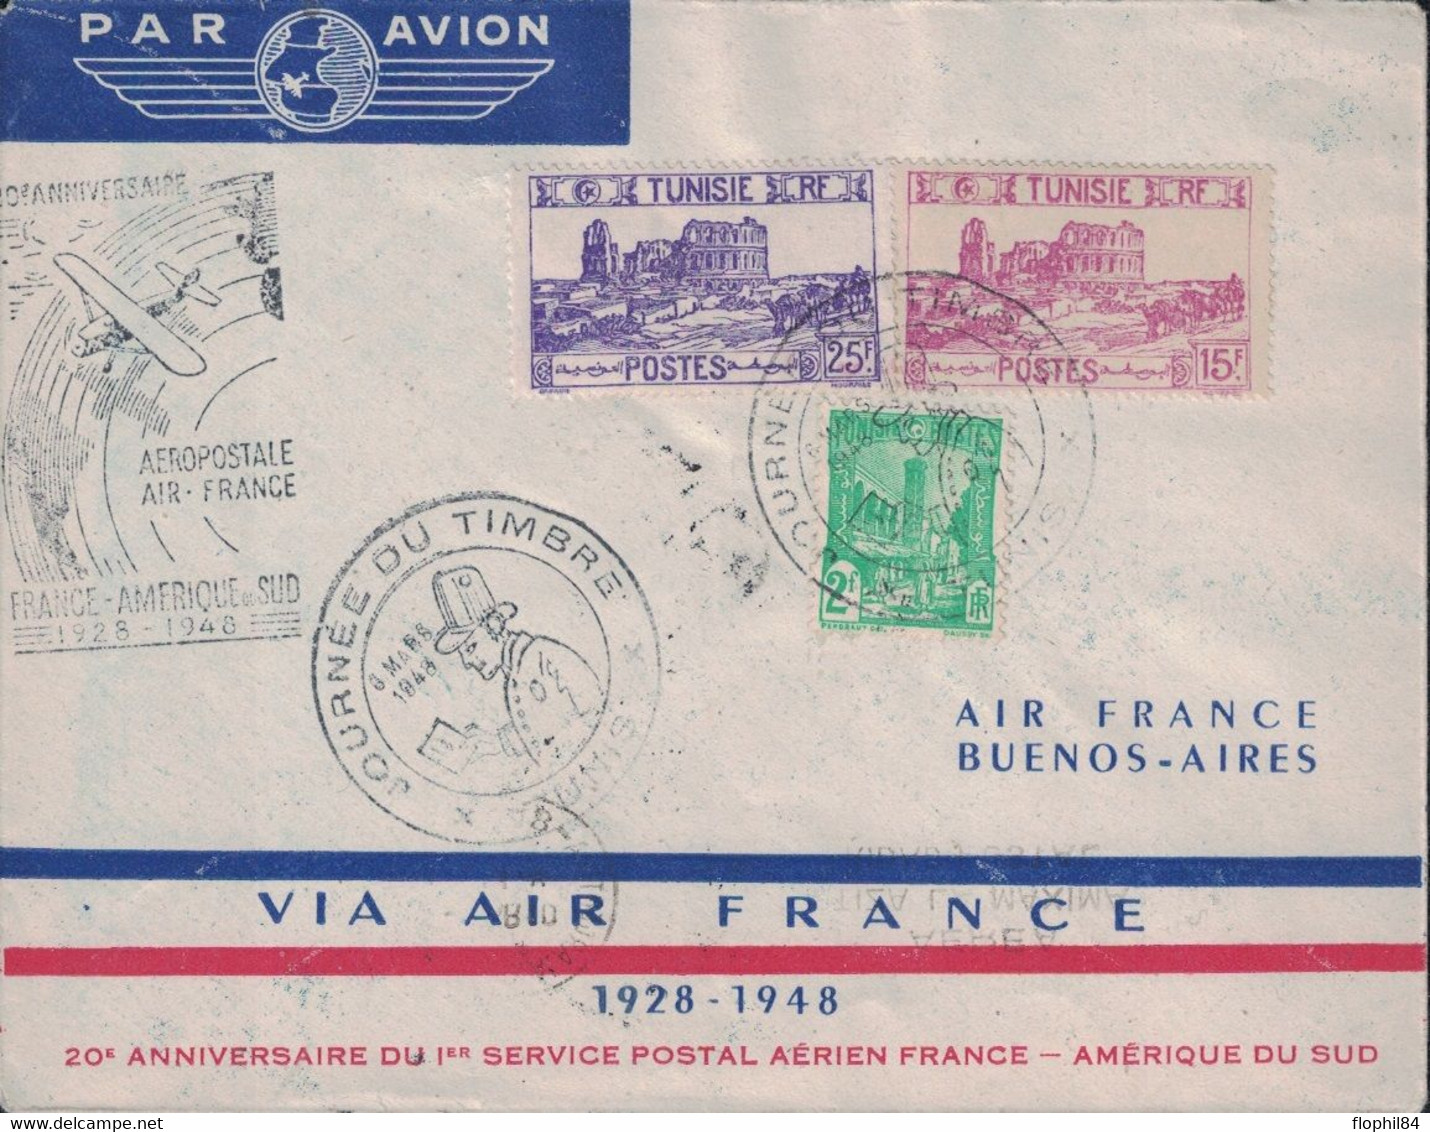 TUNISIE - TUNIS - ENVELOPPE AIR FRANCE - LIAISON FRANCE AMERIQUE DU SUD - 1929 EN 8 JOURS - 1948 EN 30 HEURES - CACHET S - Posta Aerea